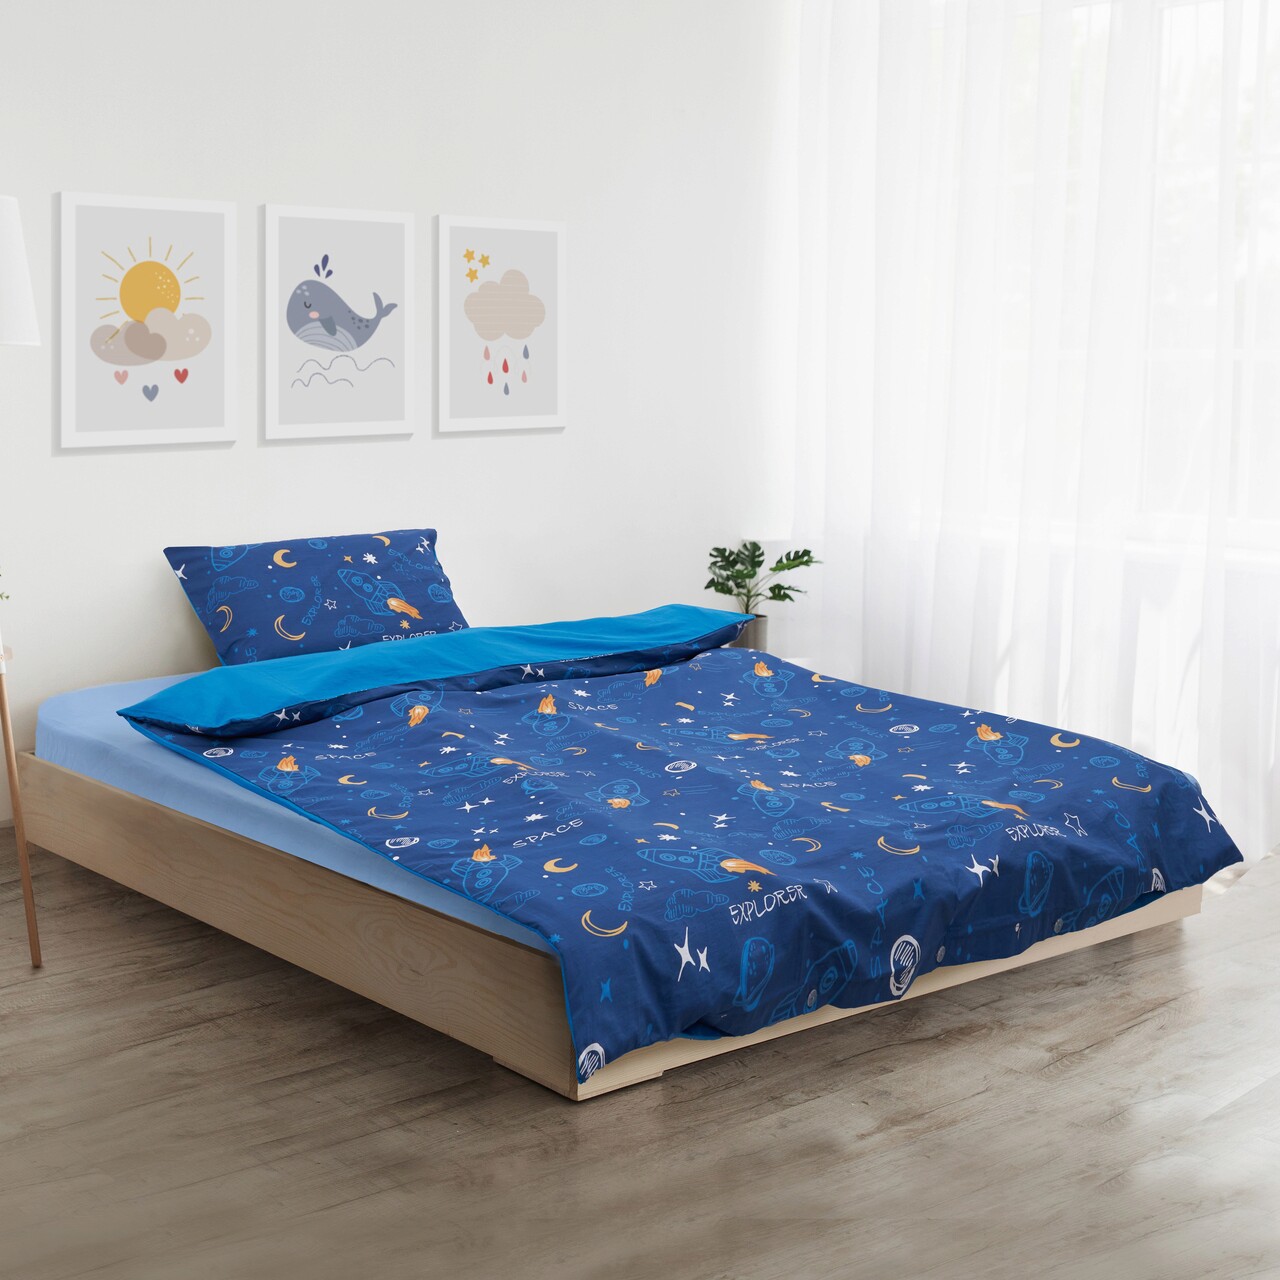 Lenjerie de pat pentru o persoana Space, Heinner Home, 150x200 cm, bumbac, multicolor